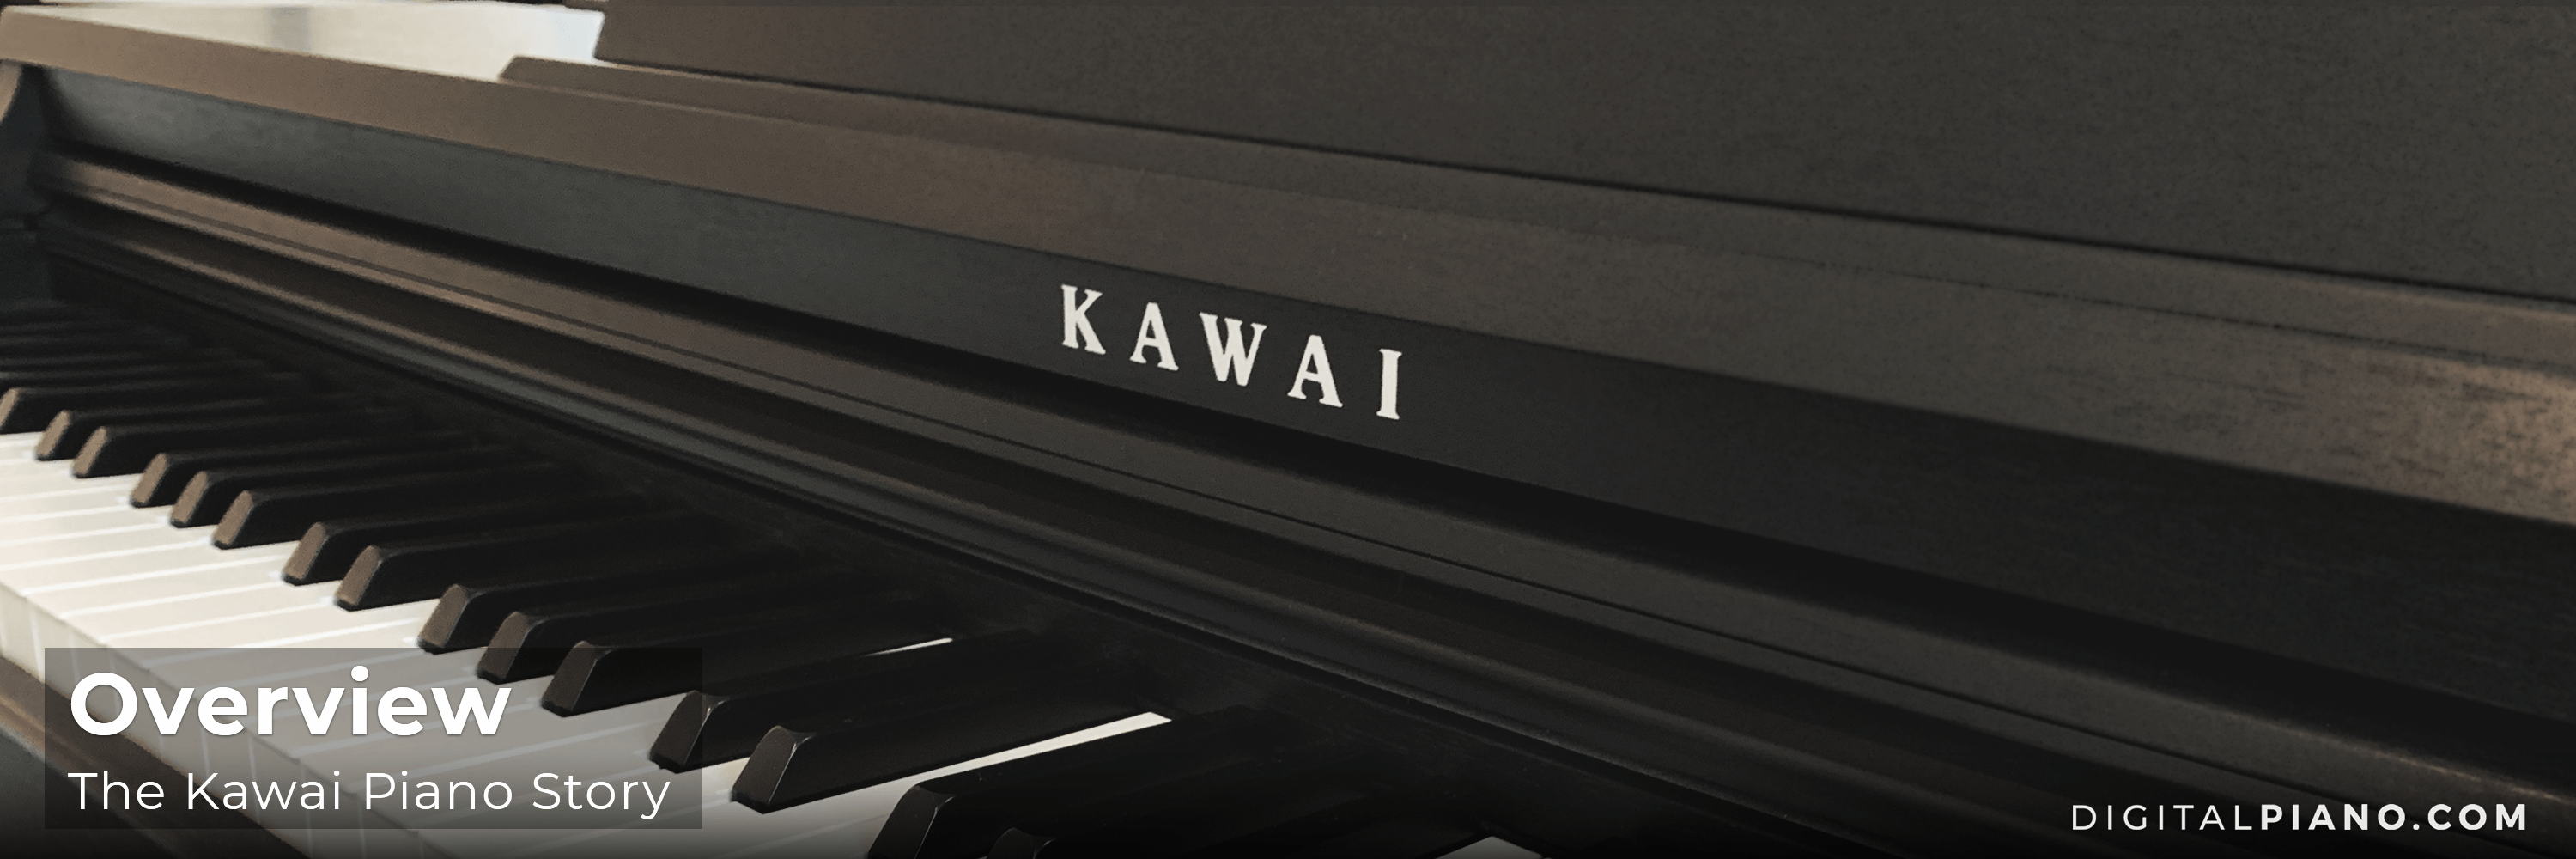 The Kawai Piano Story